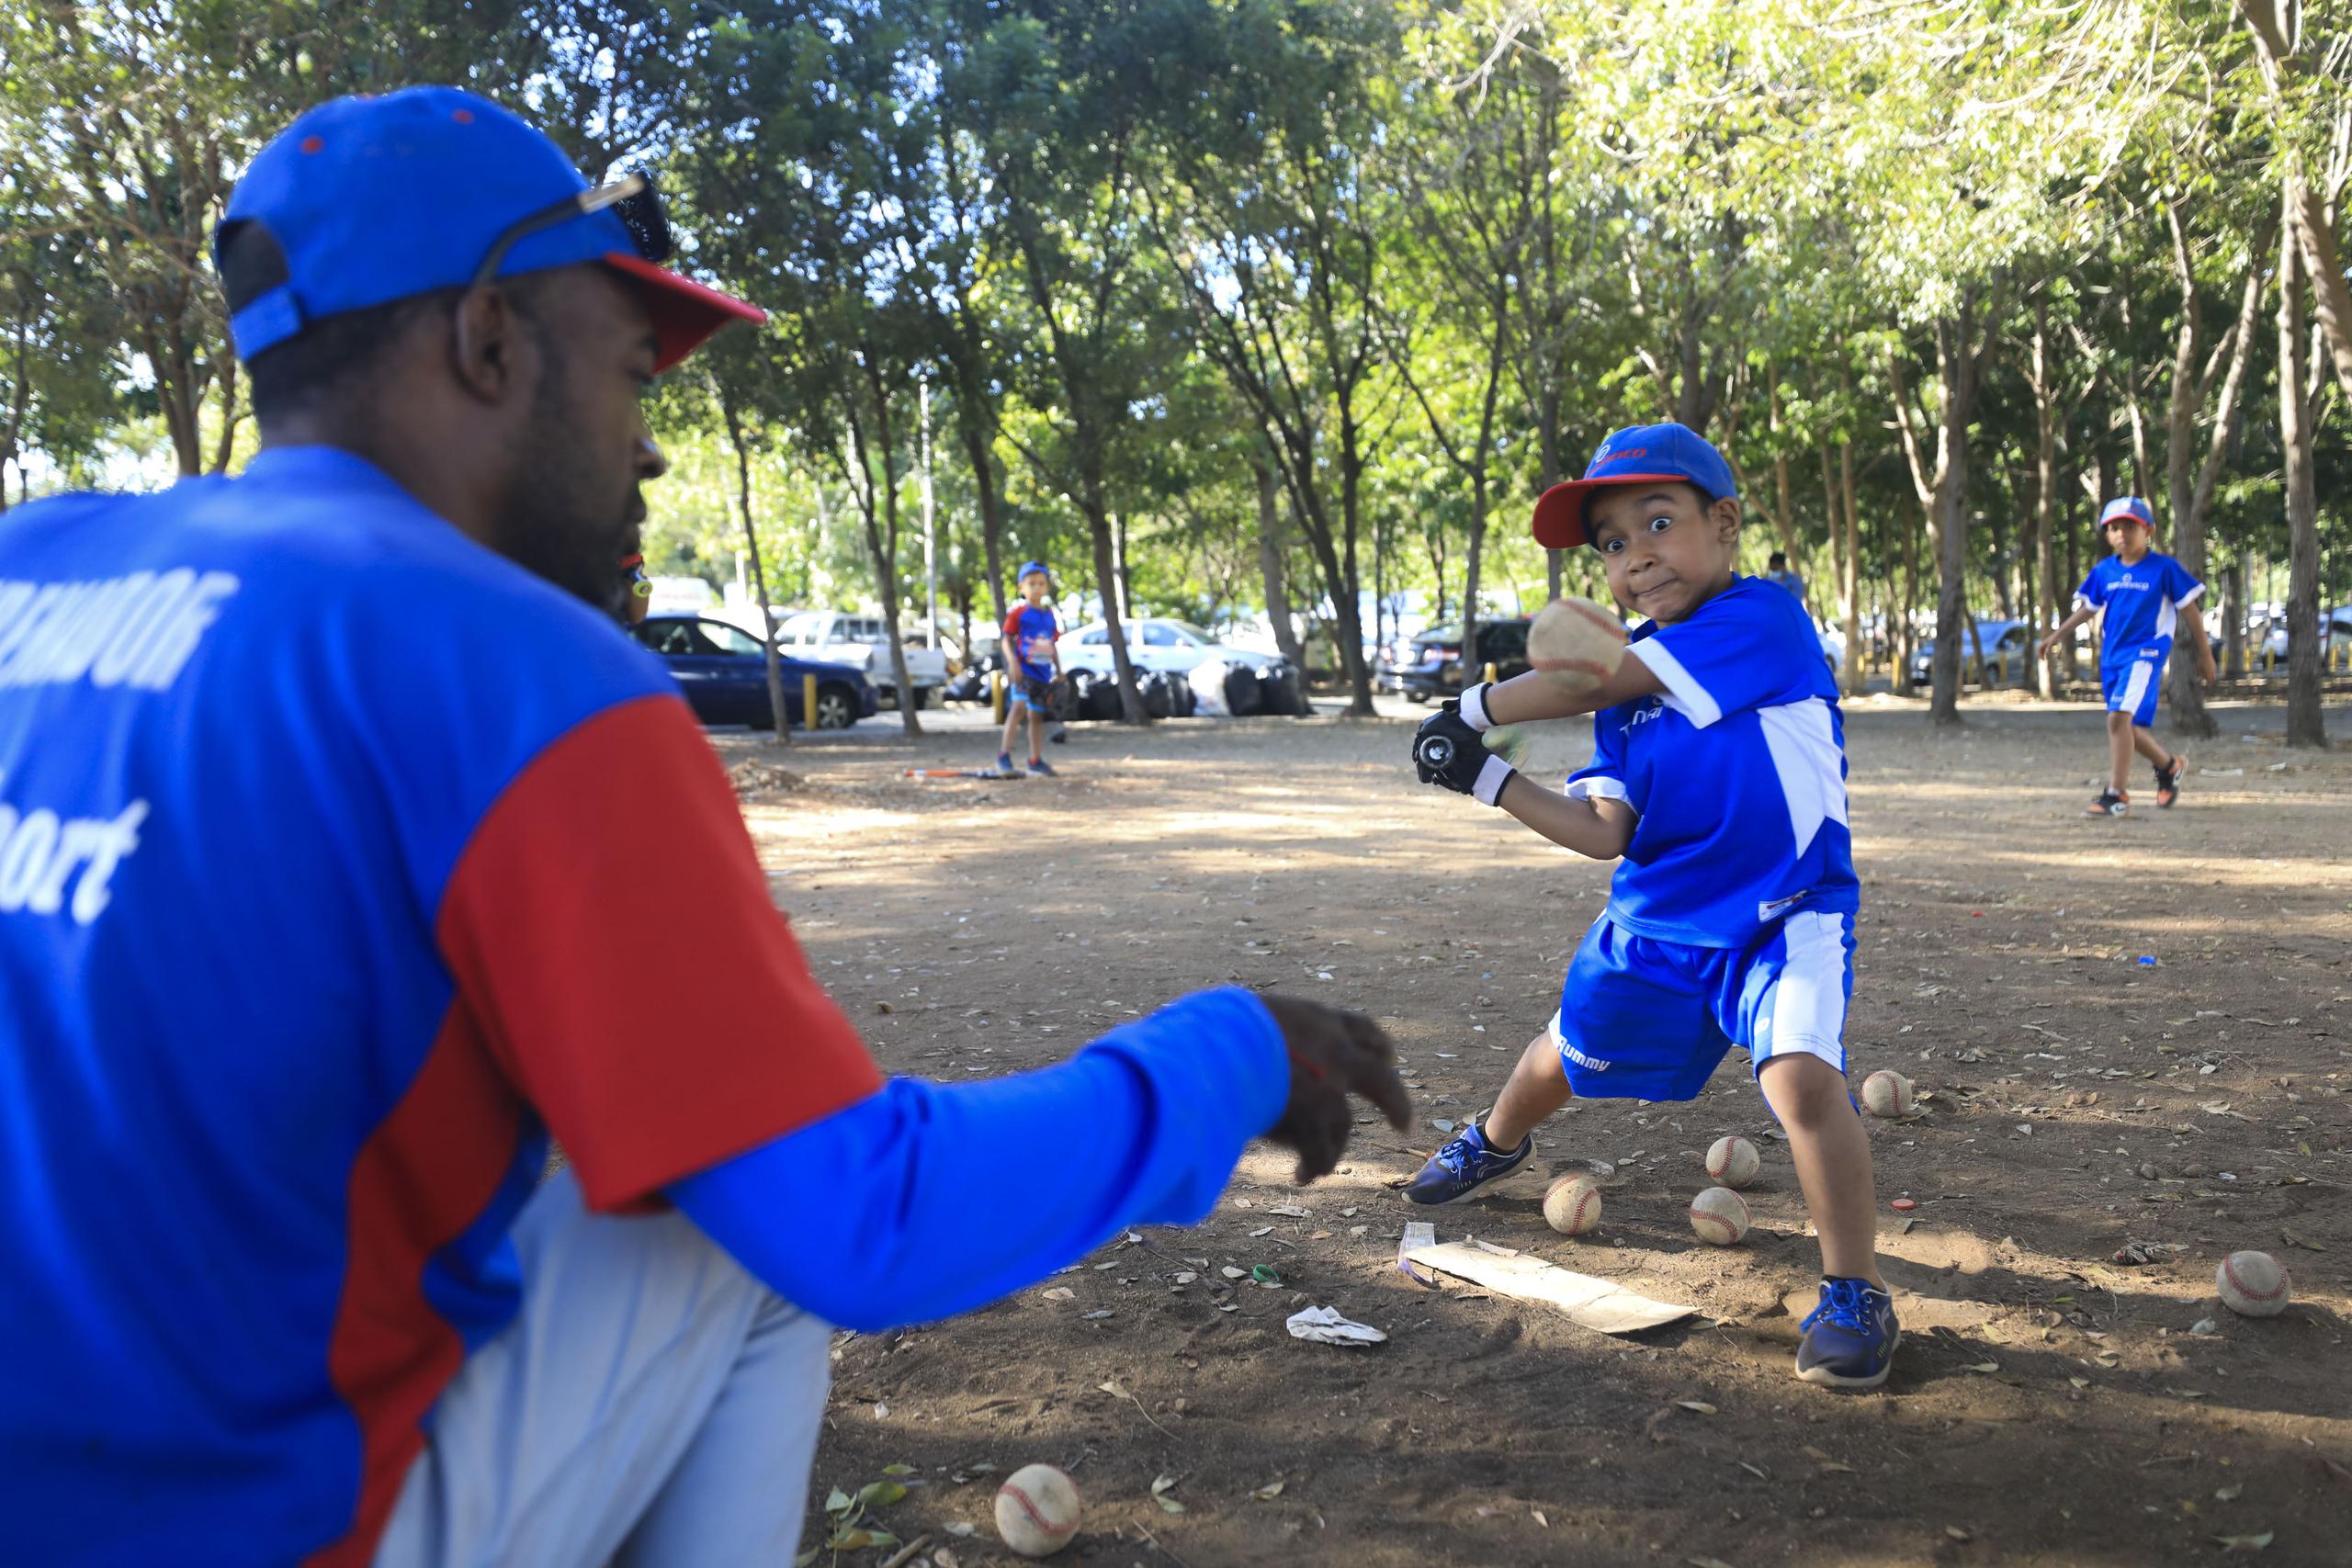 Para muchos niños y jóvenes en República Dominicana, el béisbol es la vía principal hacia un futuro mejor para ellos y sus familias.